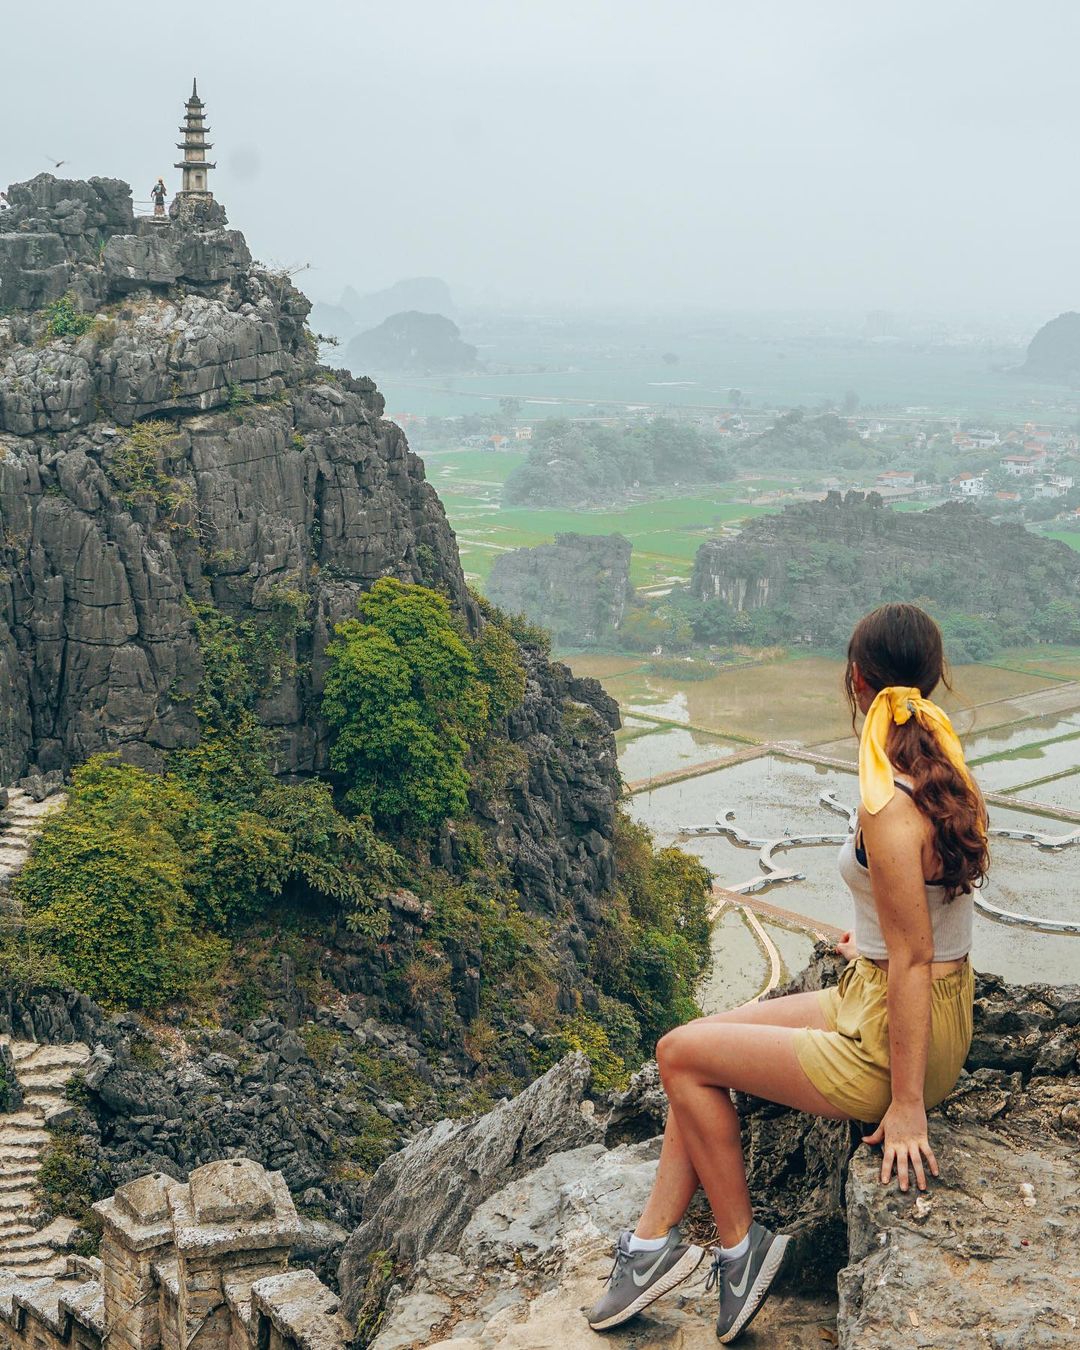 7 điểm du lịch Việt Nam sở hữu cảnh đẹp siêu thực được du khách nước ngoài công nhận không thể diễn đạt qua ảnh chụp - 10